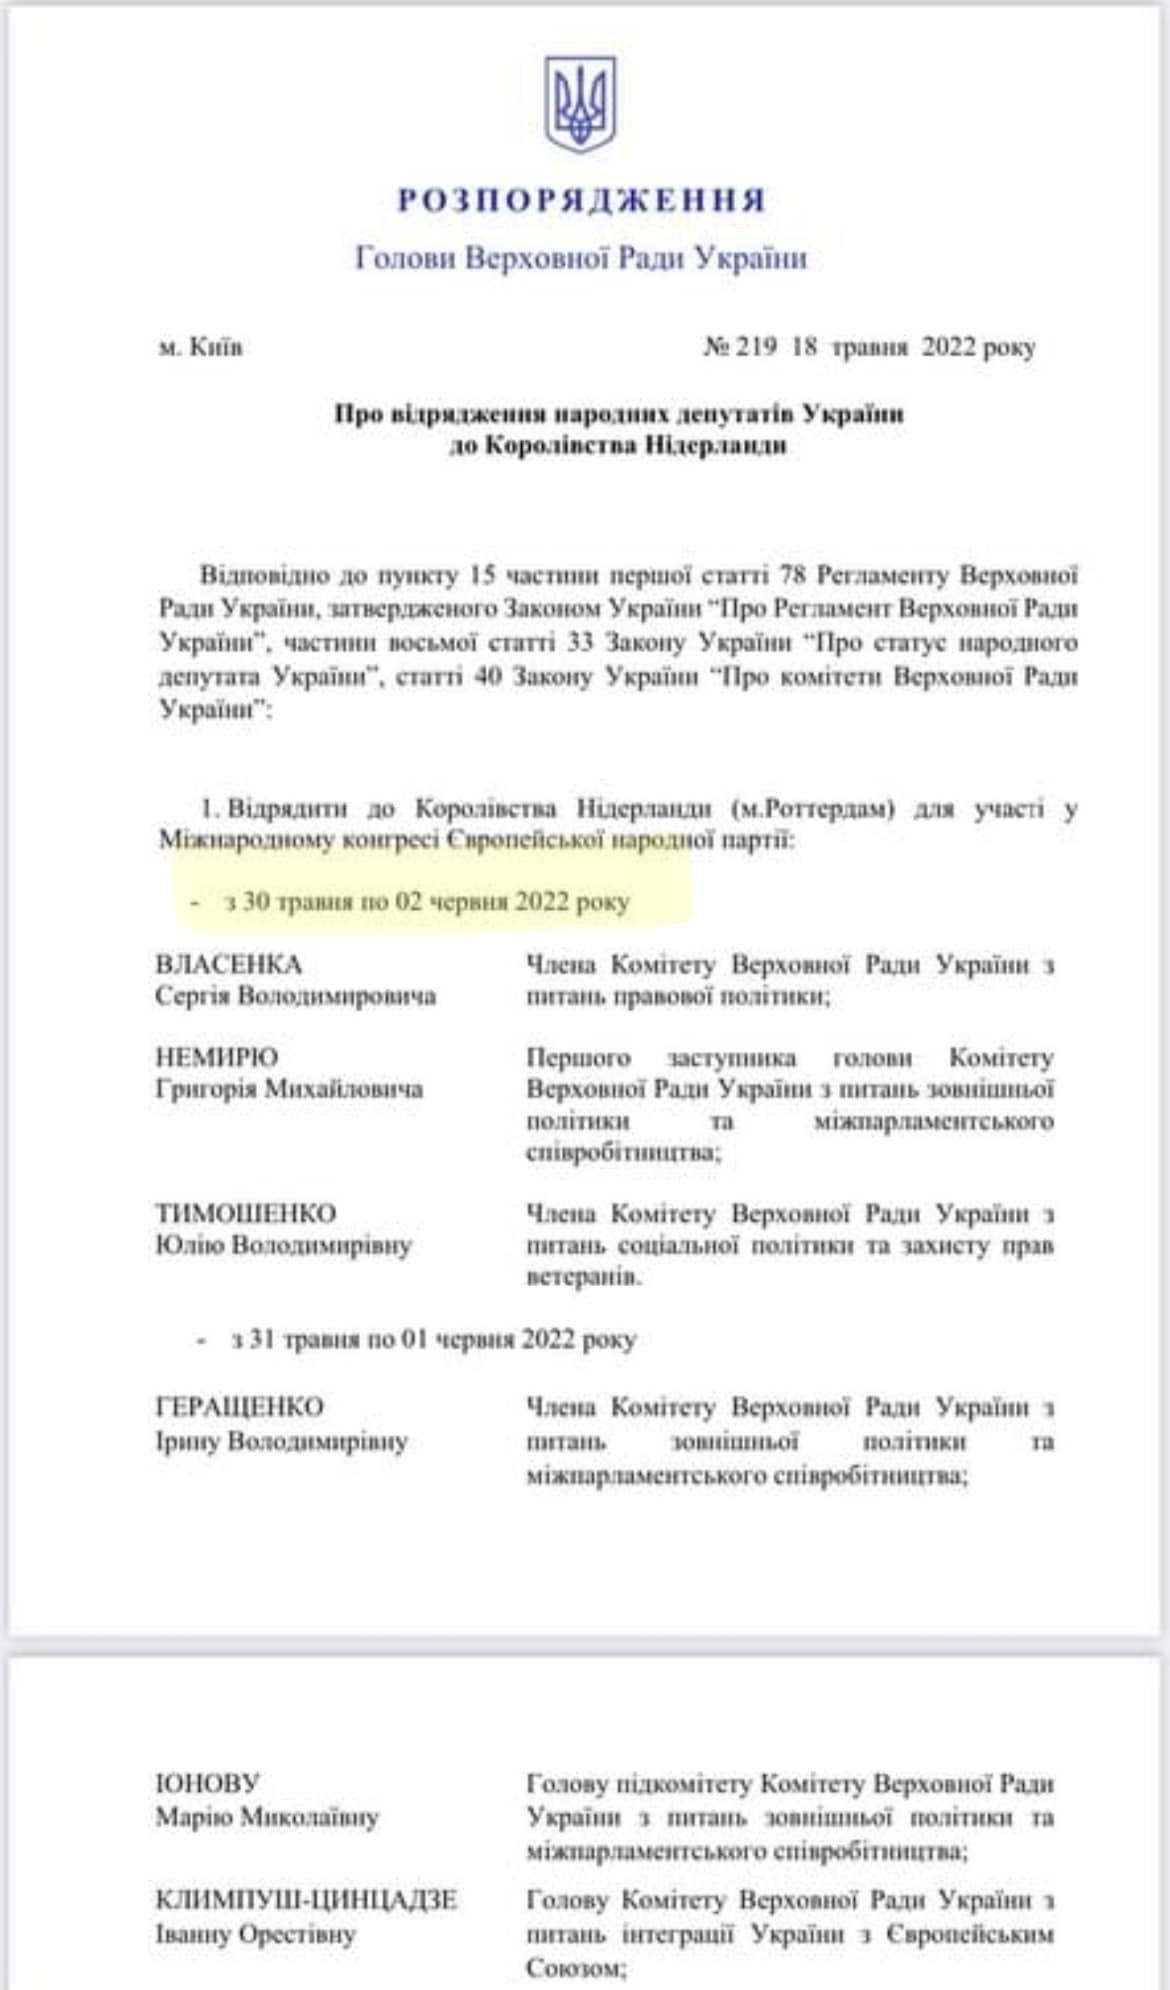 Распоряжение спикера Рады о командировке, с.1